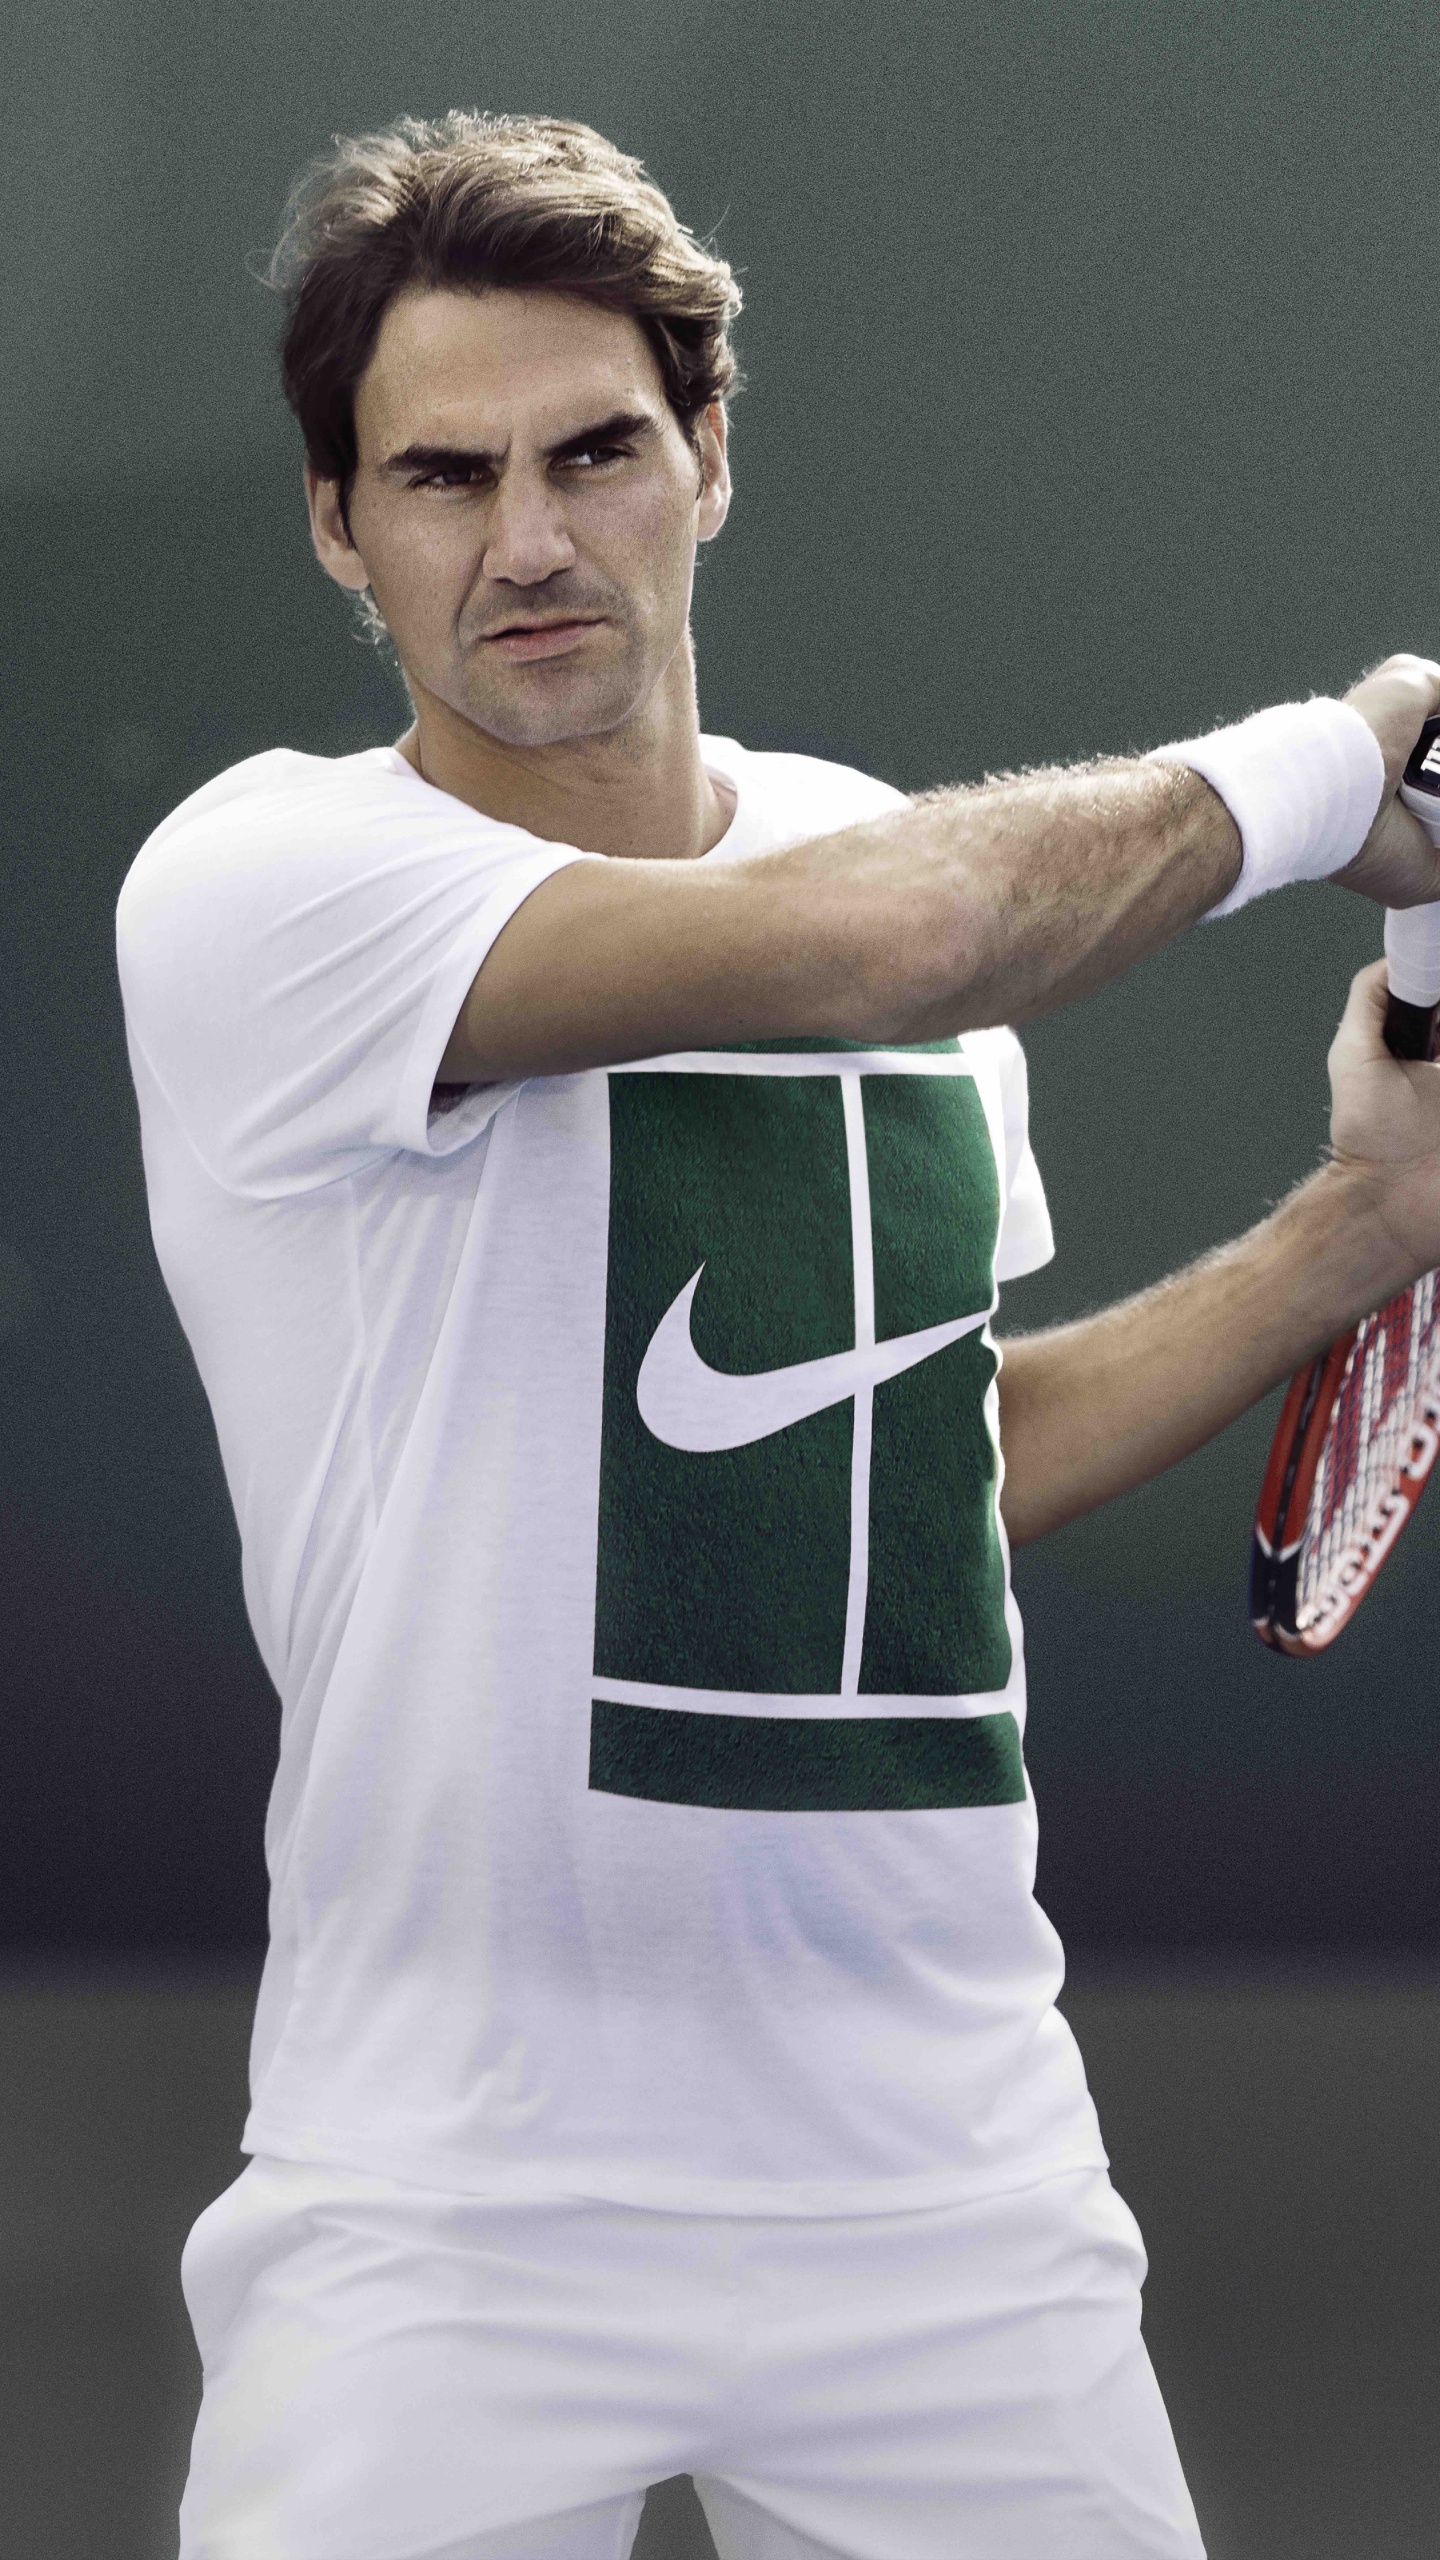 Homme en Chemise Jersey Nike Vert et Blanc Tenant Une Raquette de Tennis Rouge et Blanc. Wallpaper in 1440x2560 Resolution